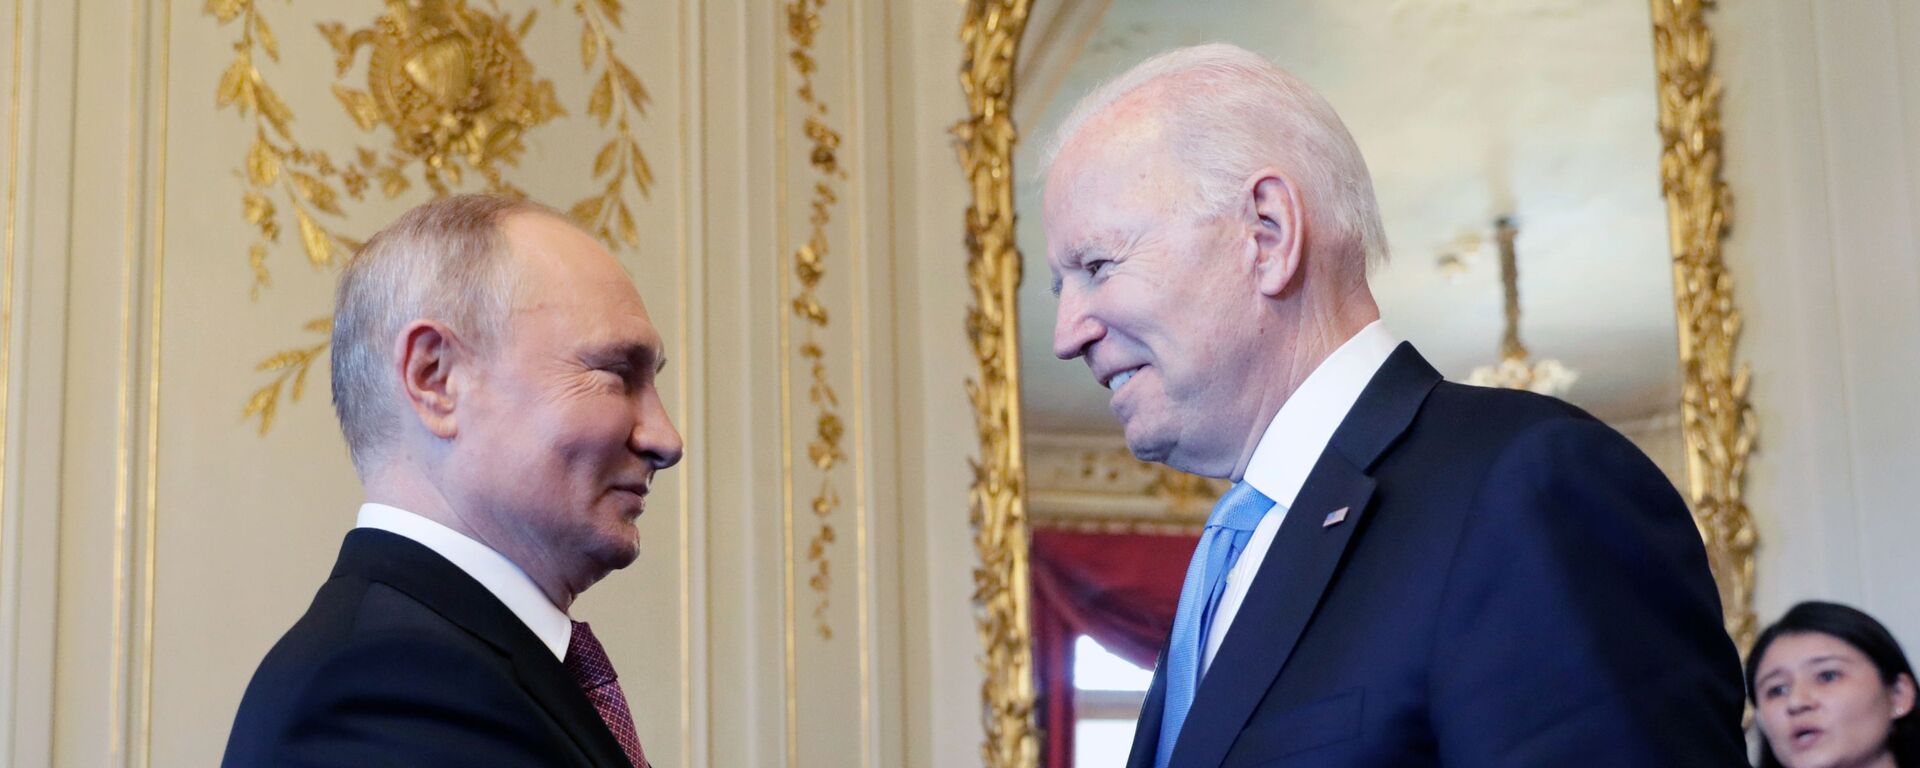 Cuộc gặp đầu tiên giữa hai vị Tổng thống Putin và Biden tại Geneva. - Sputnik Việt Nam, 1920, 21.06.2021